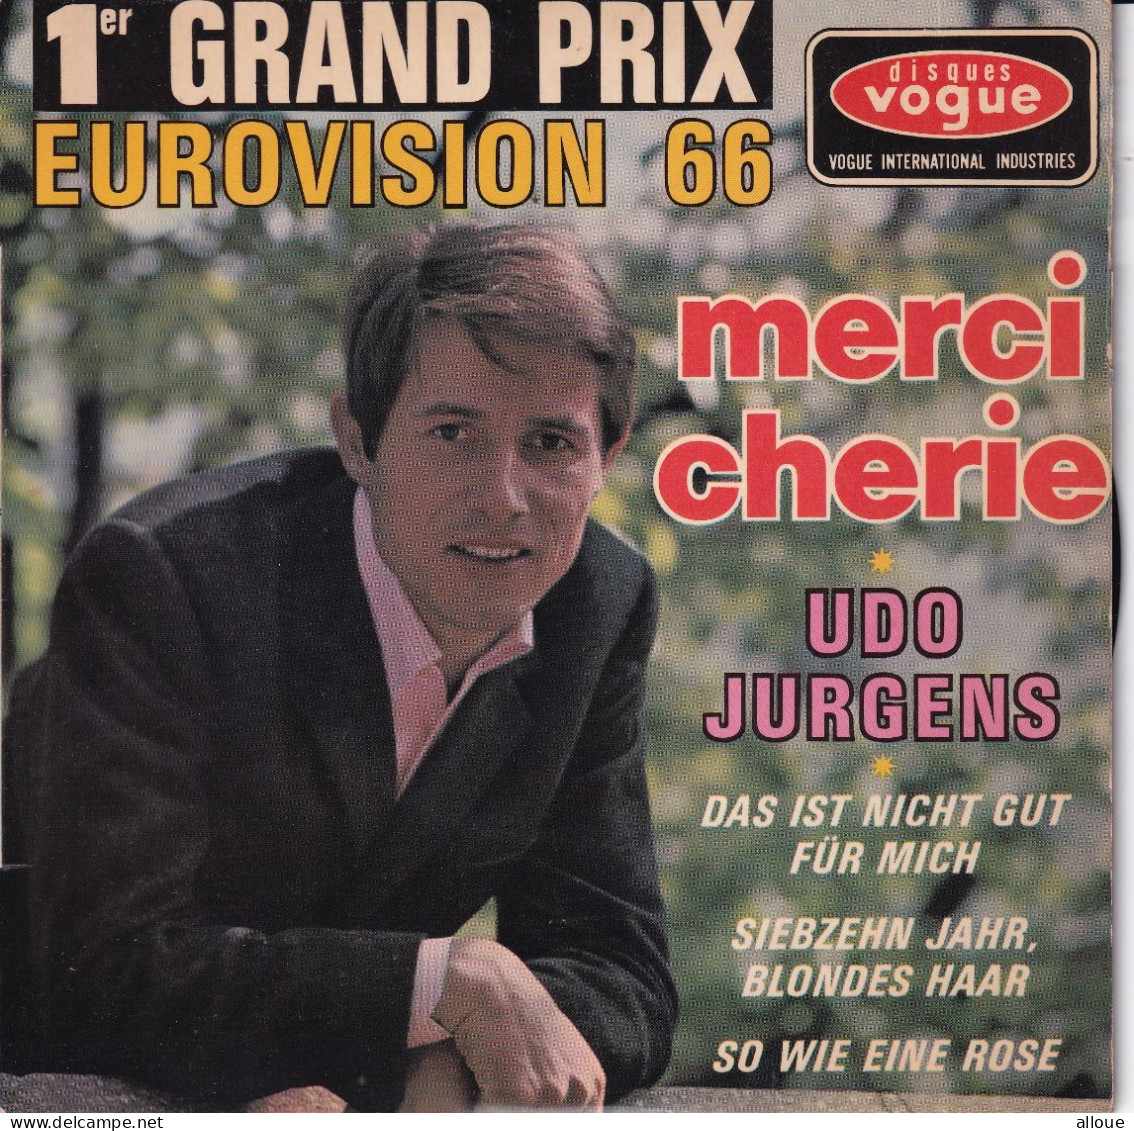 UDO JURGENS - FR EP EUROVISION 1966  - MERCI CHERIE + 3 - Otros - Canción Alemana